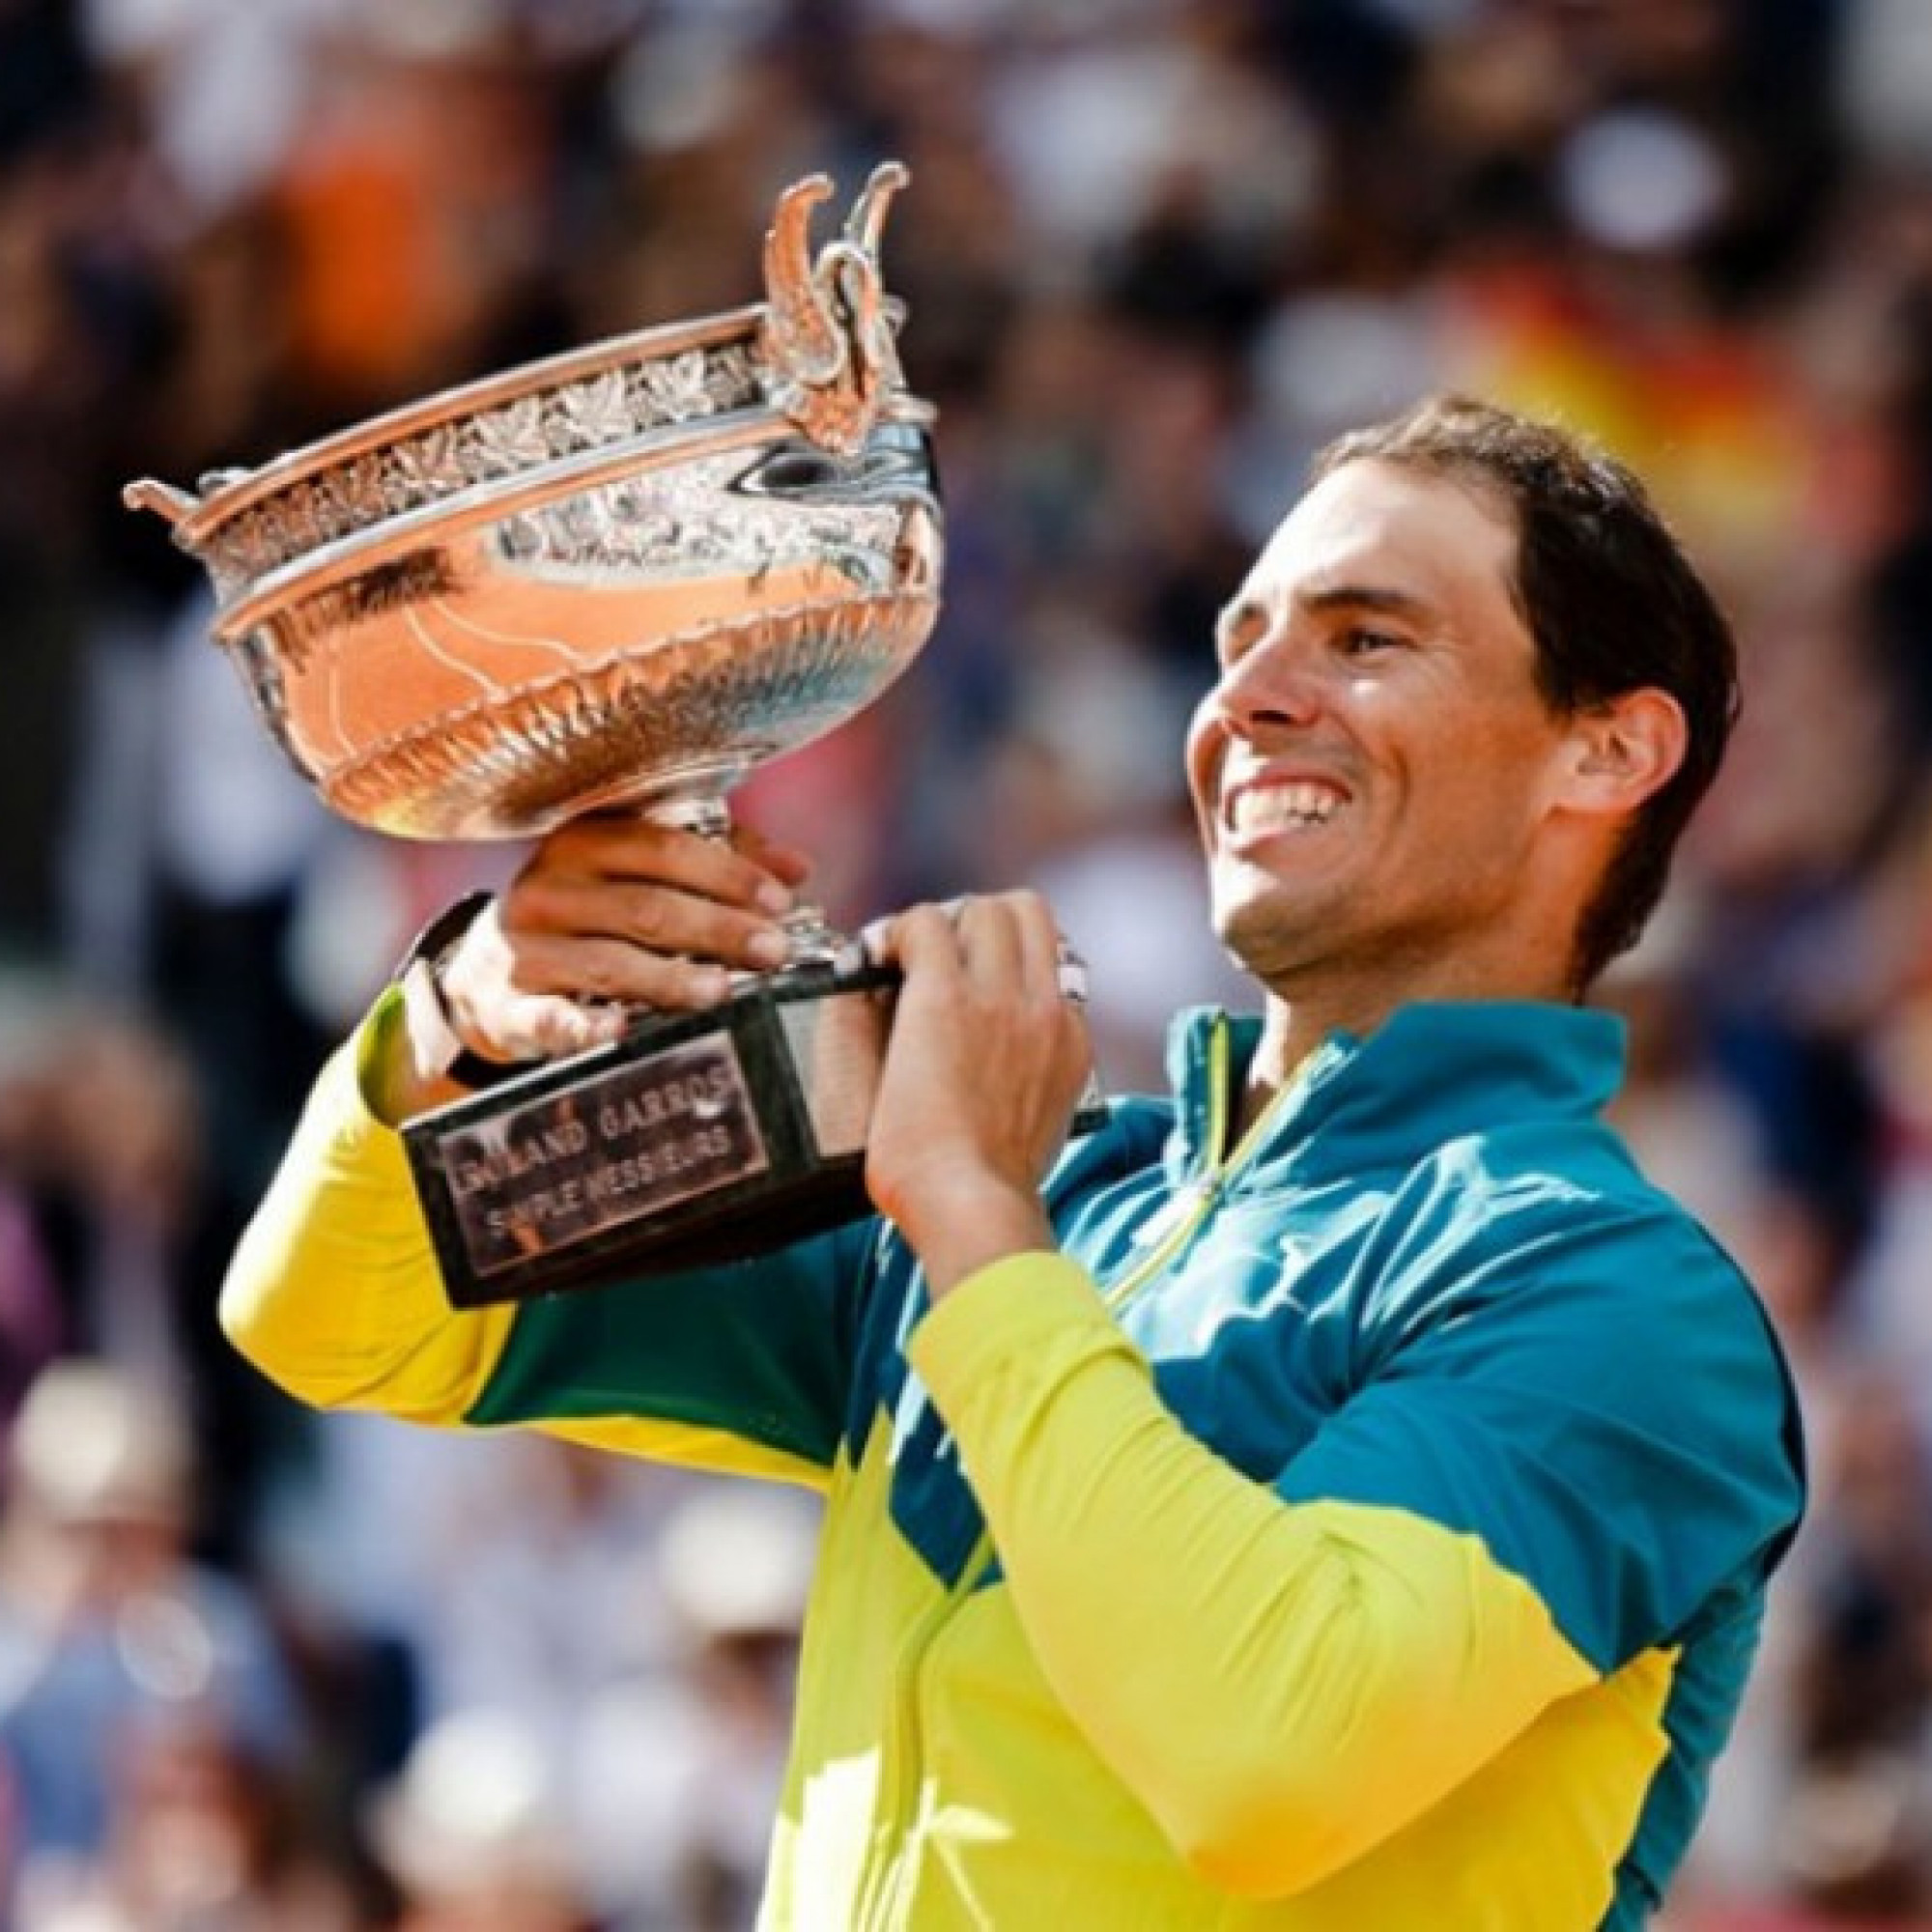  - Nóng nhất thể thao tối 20/4: Nadal được ủng hộ trao hạt giống 16 ở Roland Garros